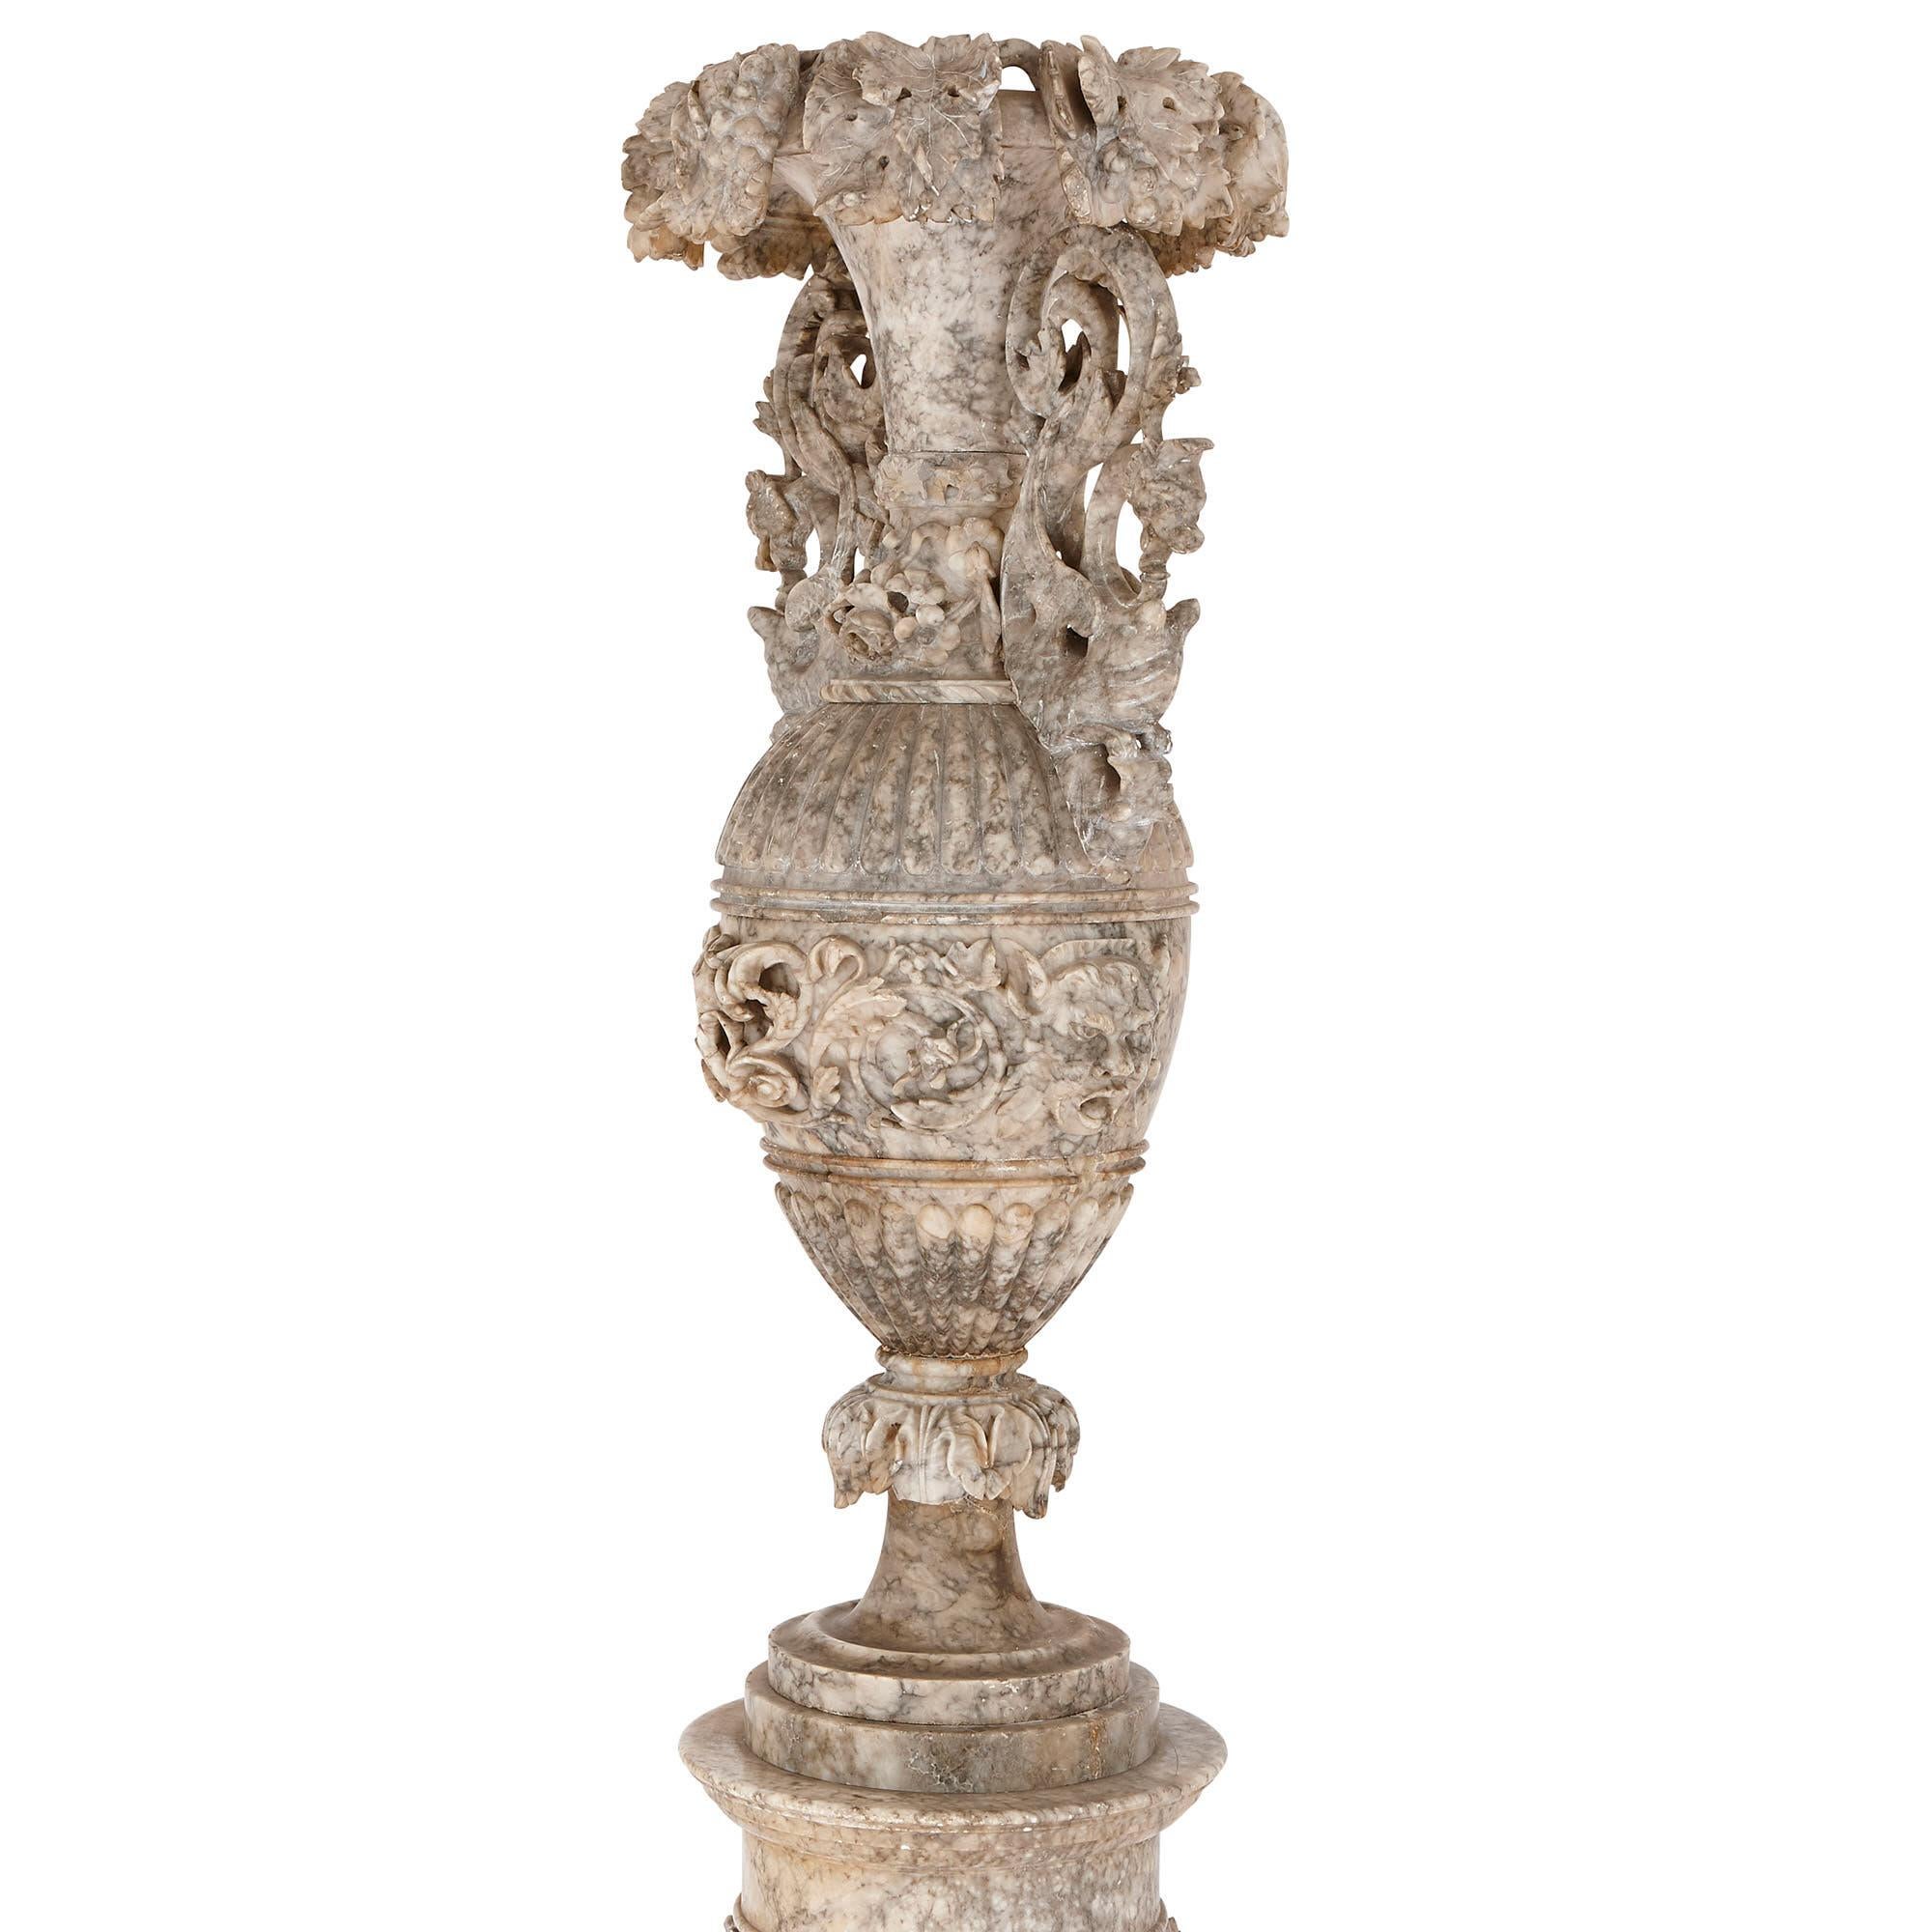 Diese große und beeindruckende Vase wurde um 1900 in Italien aus einem geäderten grauen Alabaster geschnitzt. Die Vase hat die Form eines stilisierten Loutrophoros-Amphora-Gefäßes mit einem eiförmigen Körper und einem langgestreckten Hals, der mit